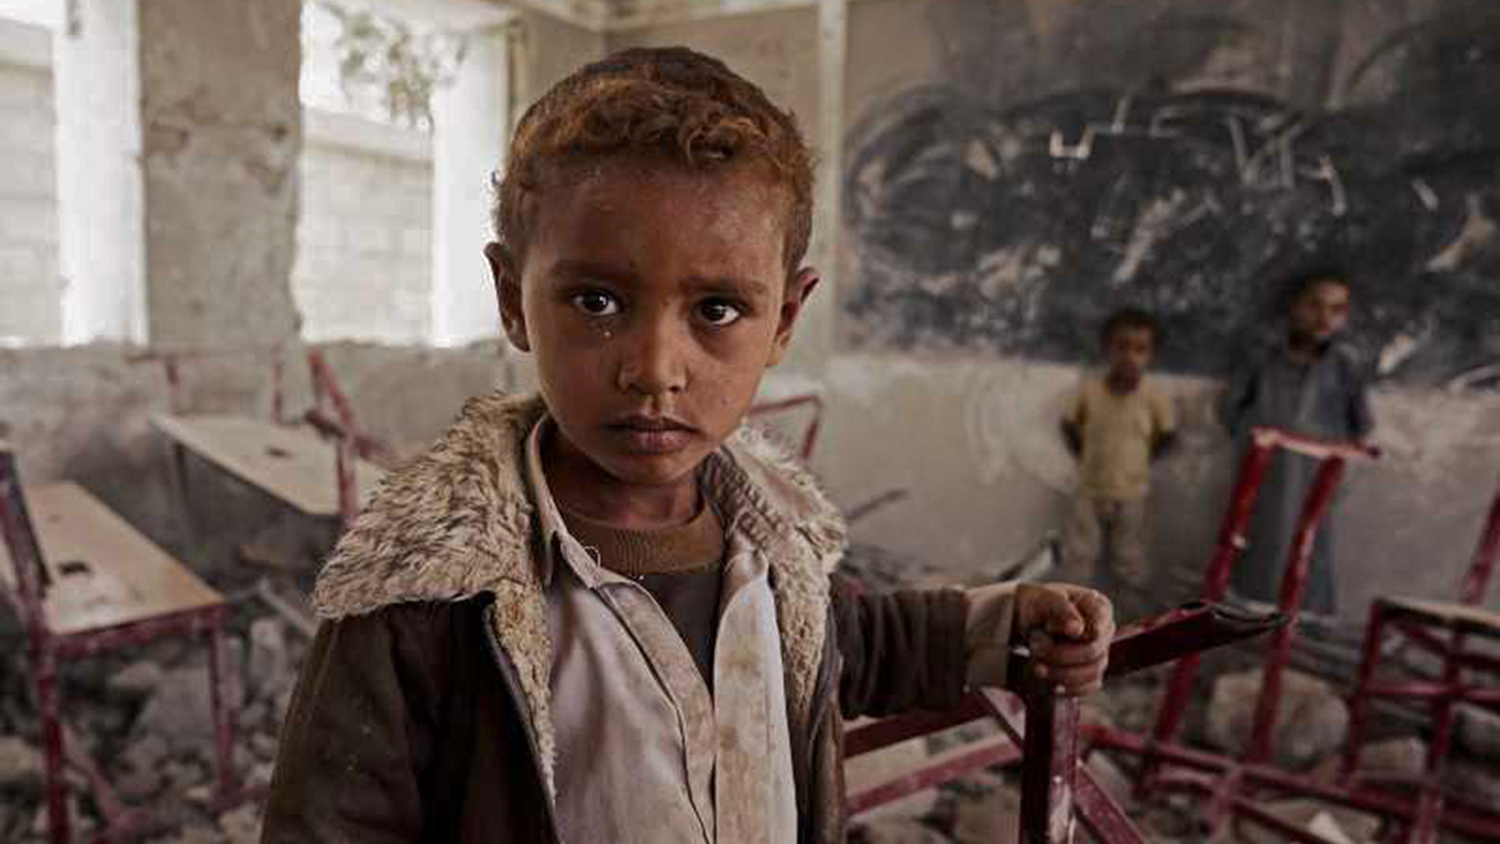 Un enfant au milieu des ruines de la guerre au Yémen.